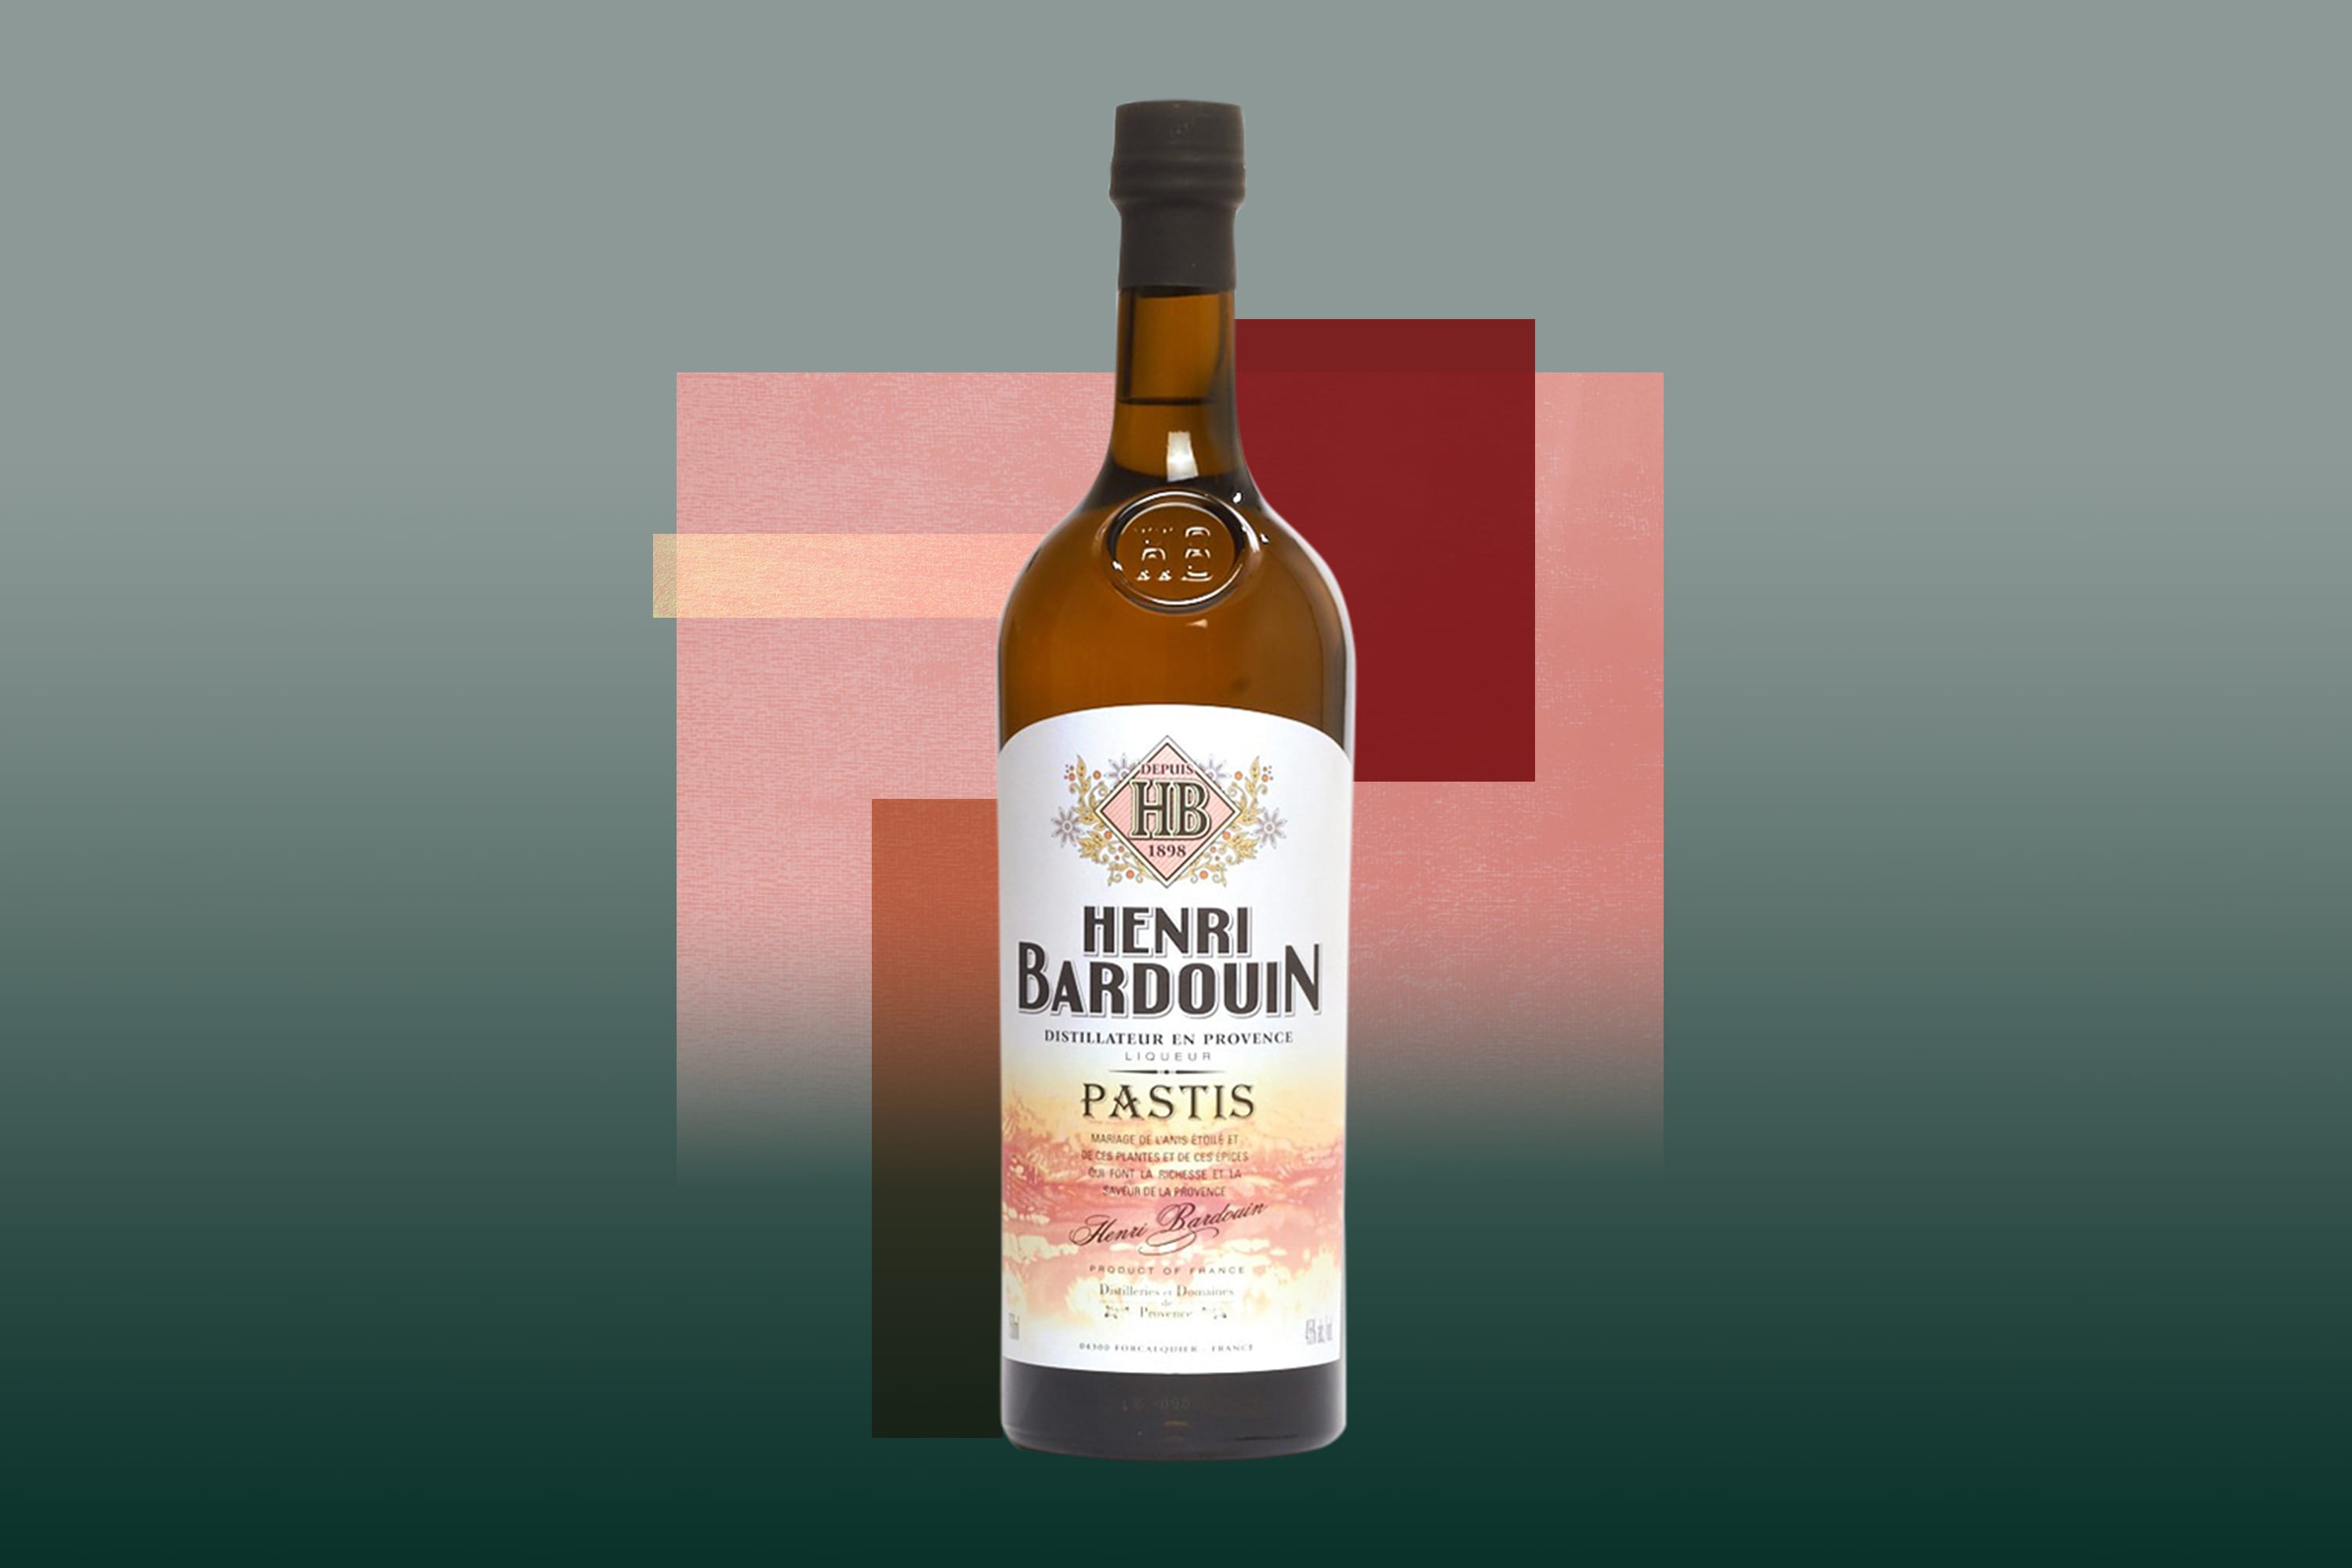 Henri Bardouin Pastis Liqueur France Spirits Review